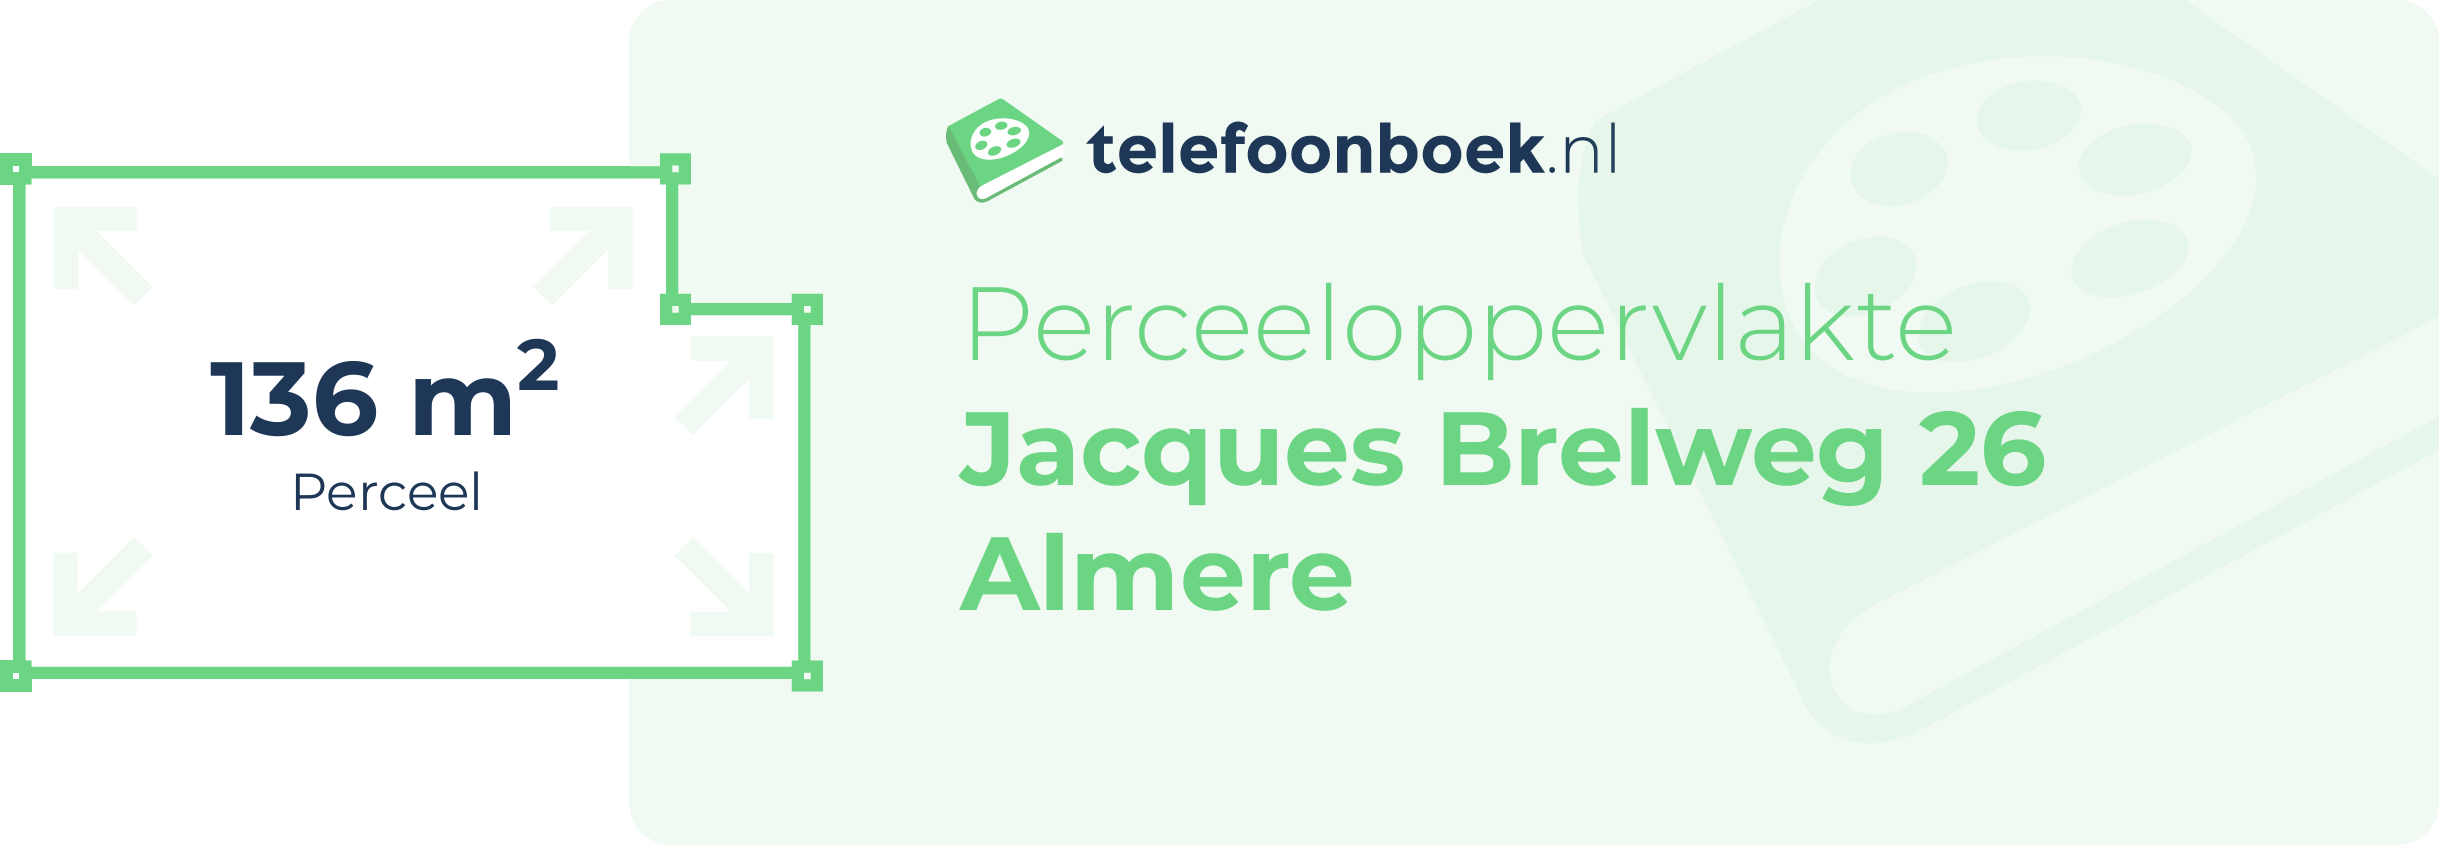 Perceeloppervlakte Jacques Brelweg 26 Almere